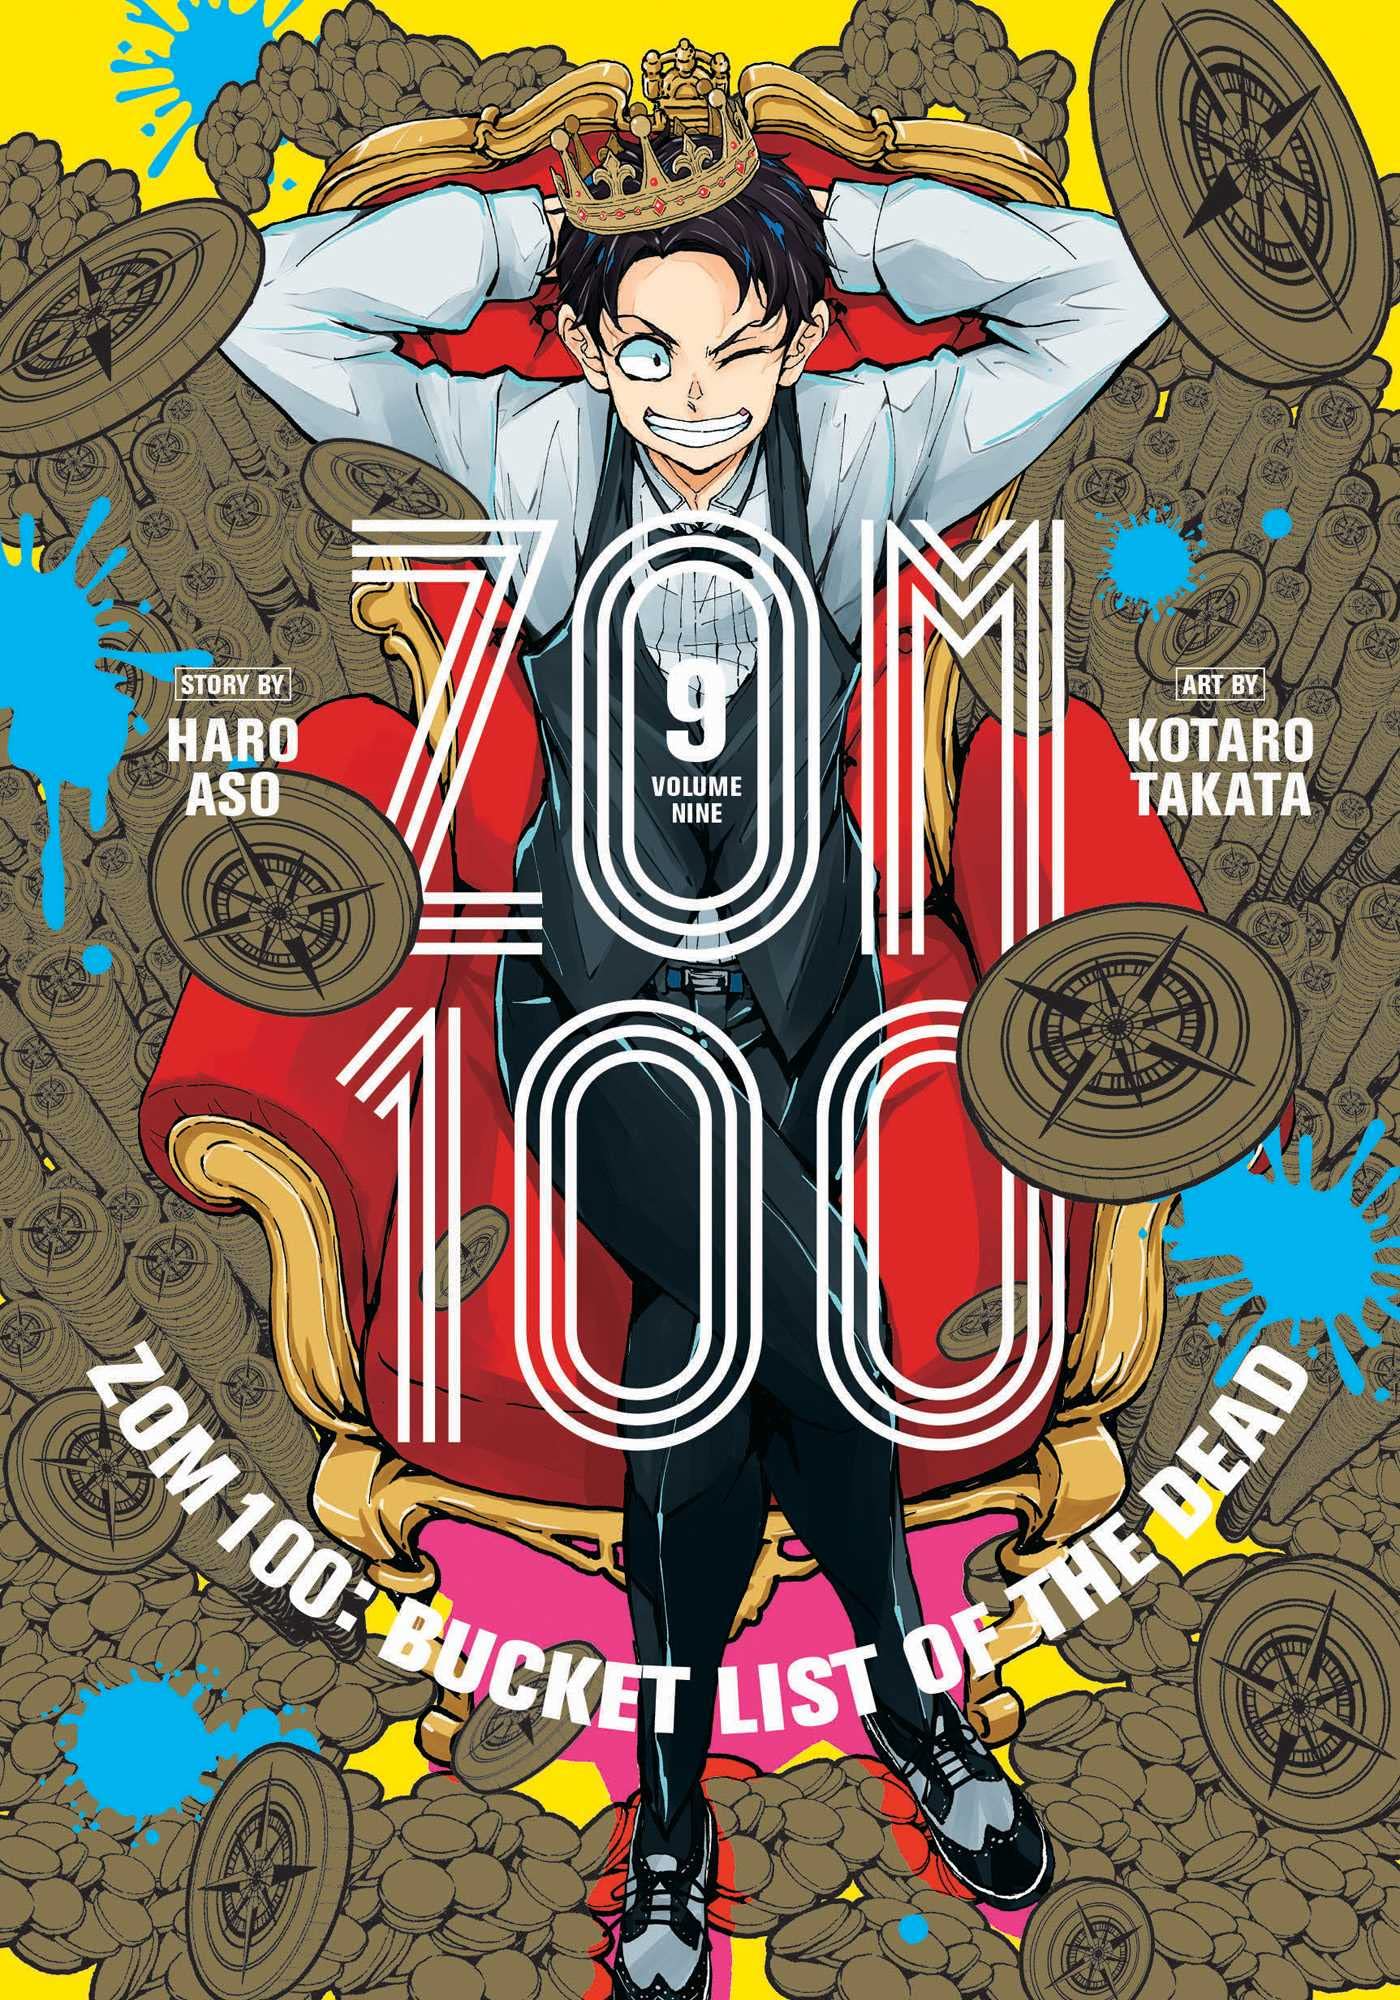 Zom 100 - Volume 9 | Haro Aso